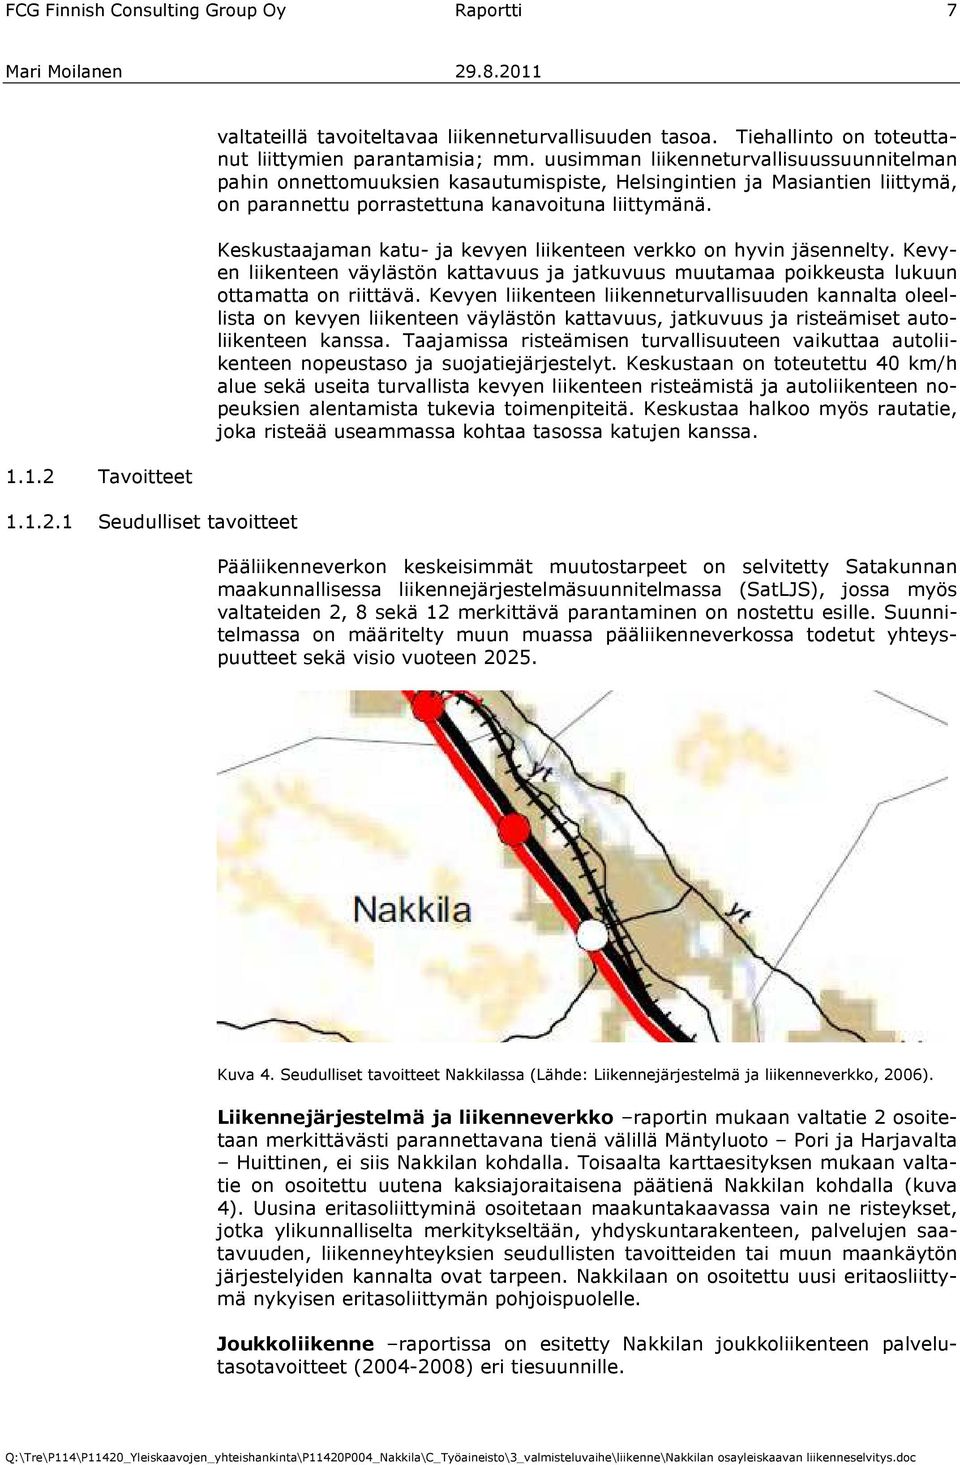 uusimman liikenneturvallisuussuunnitelman pahin onnettomuuksien kasautumispiste, Helsingintien ja Masiantien liittymä, on parannettu porrastettuna kanavoituna liittymänä.